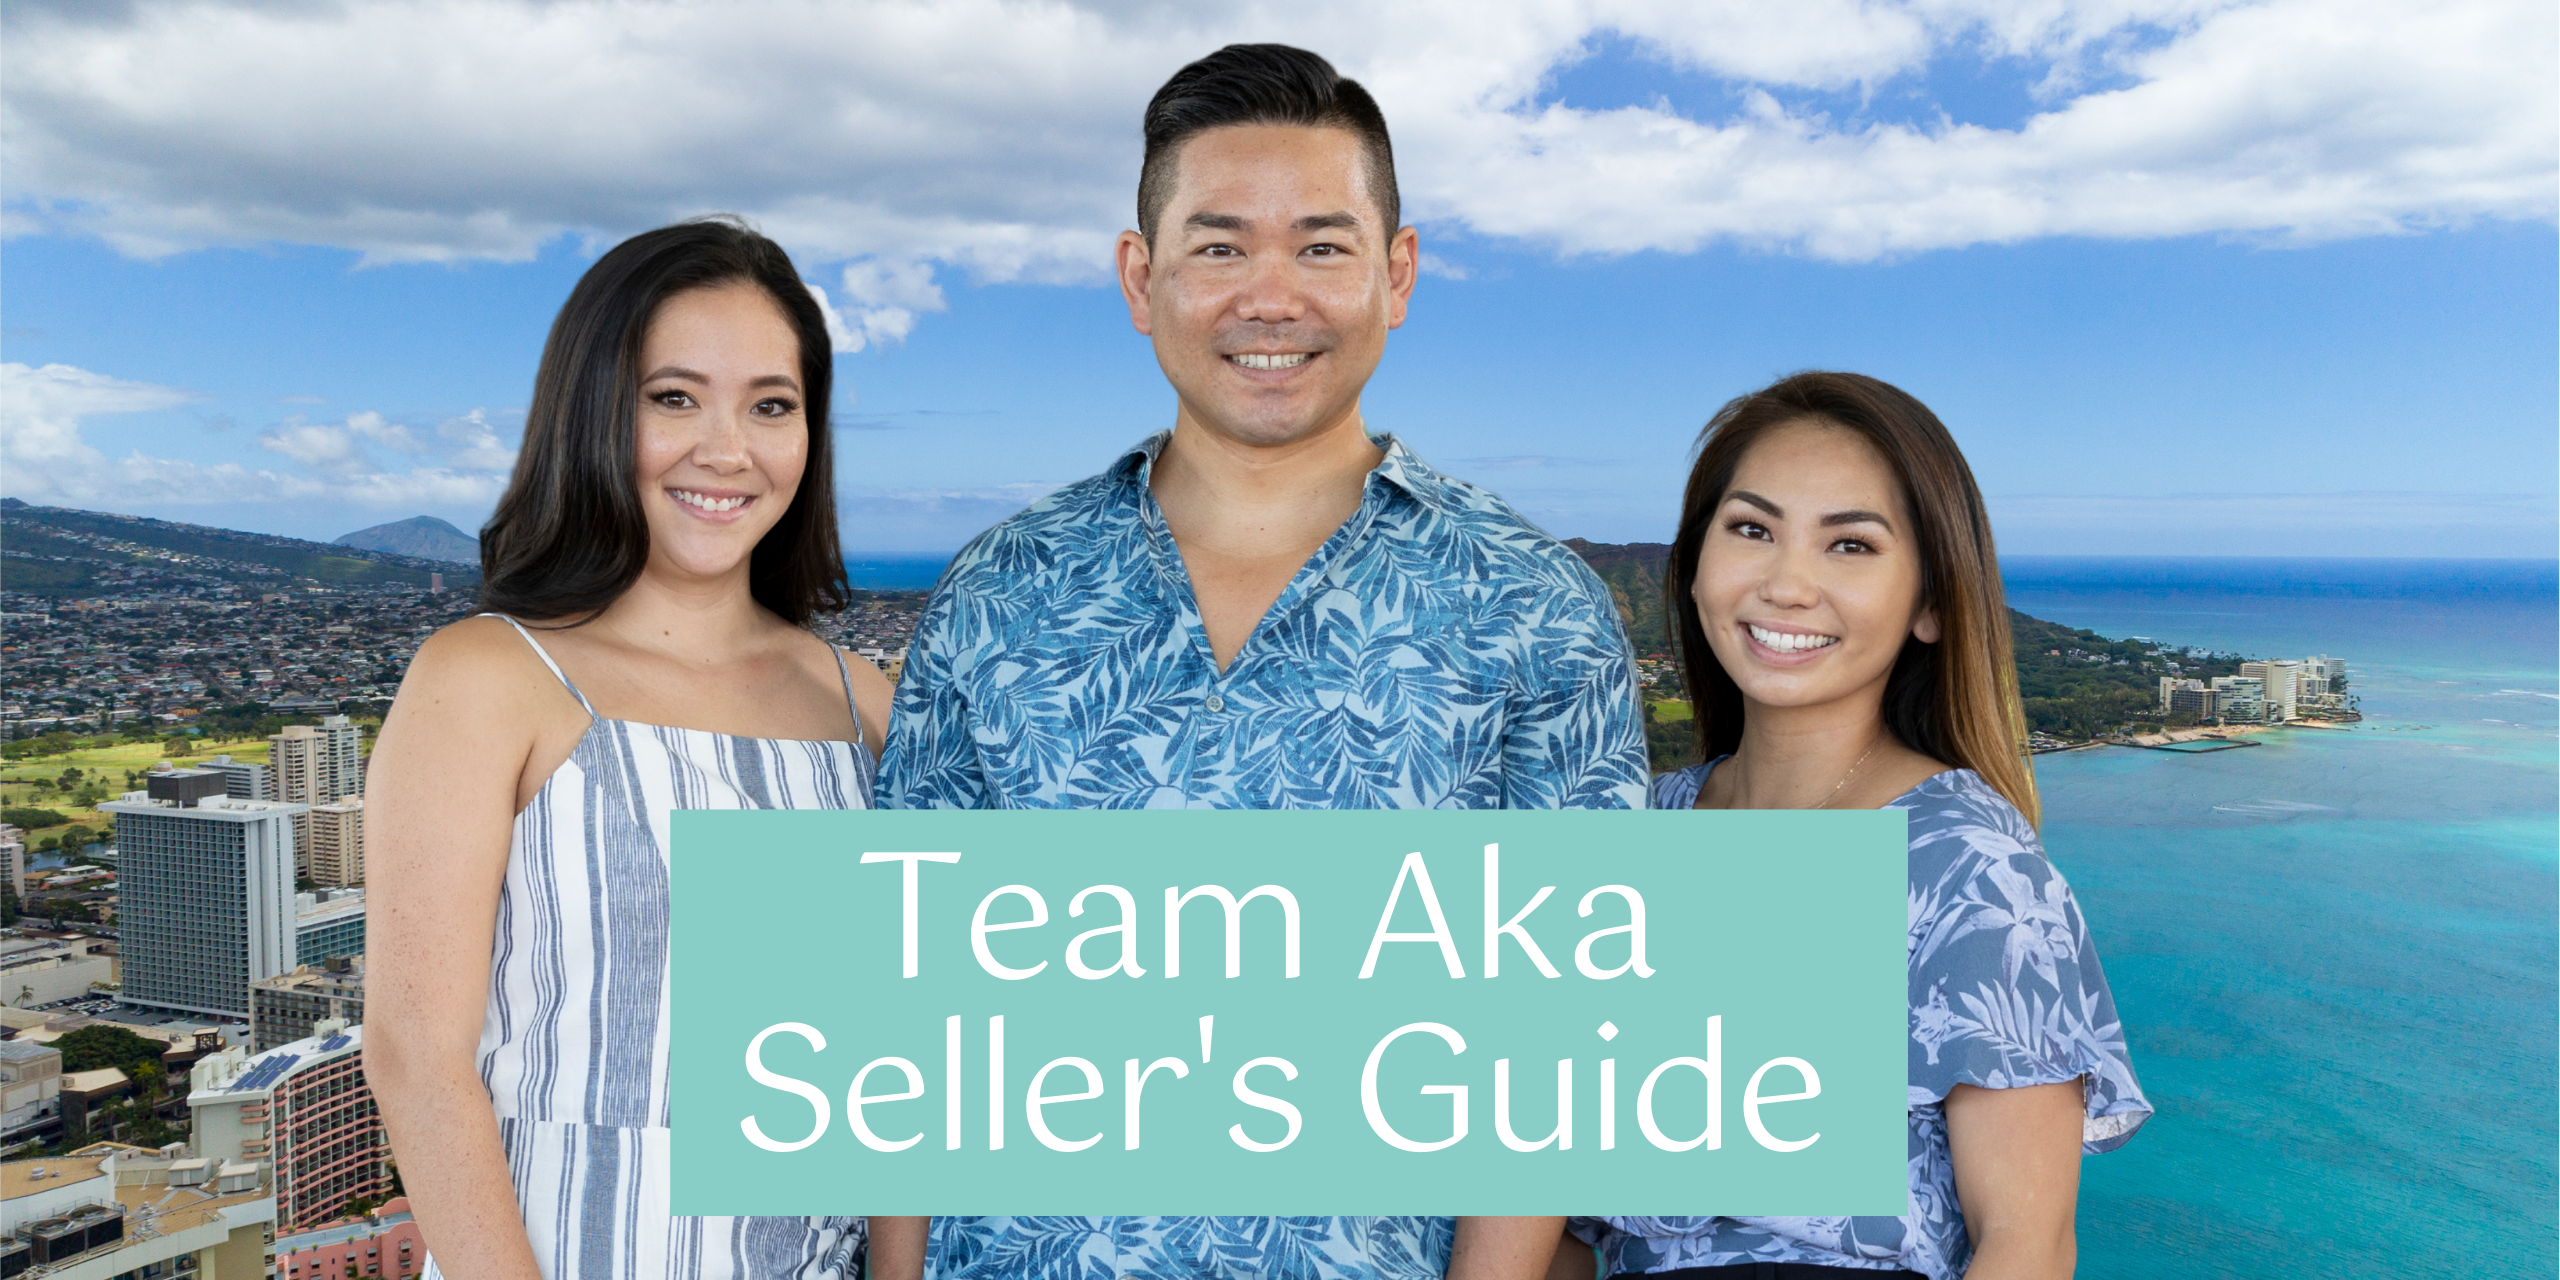 Team Aka - Seller's Guide Title